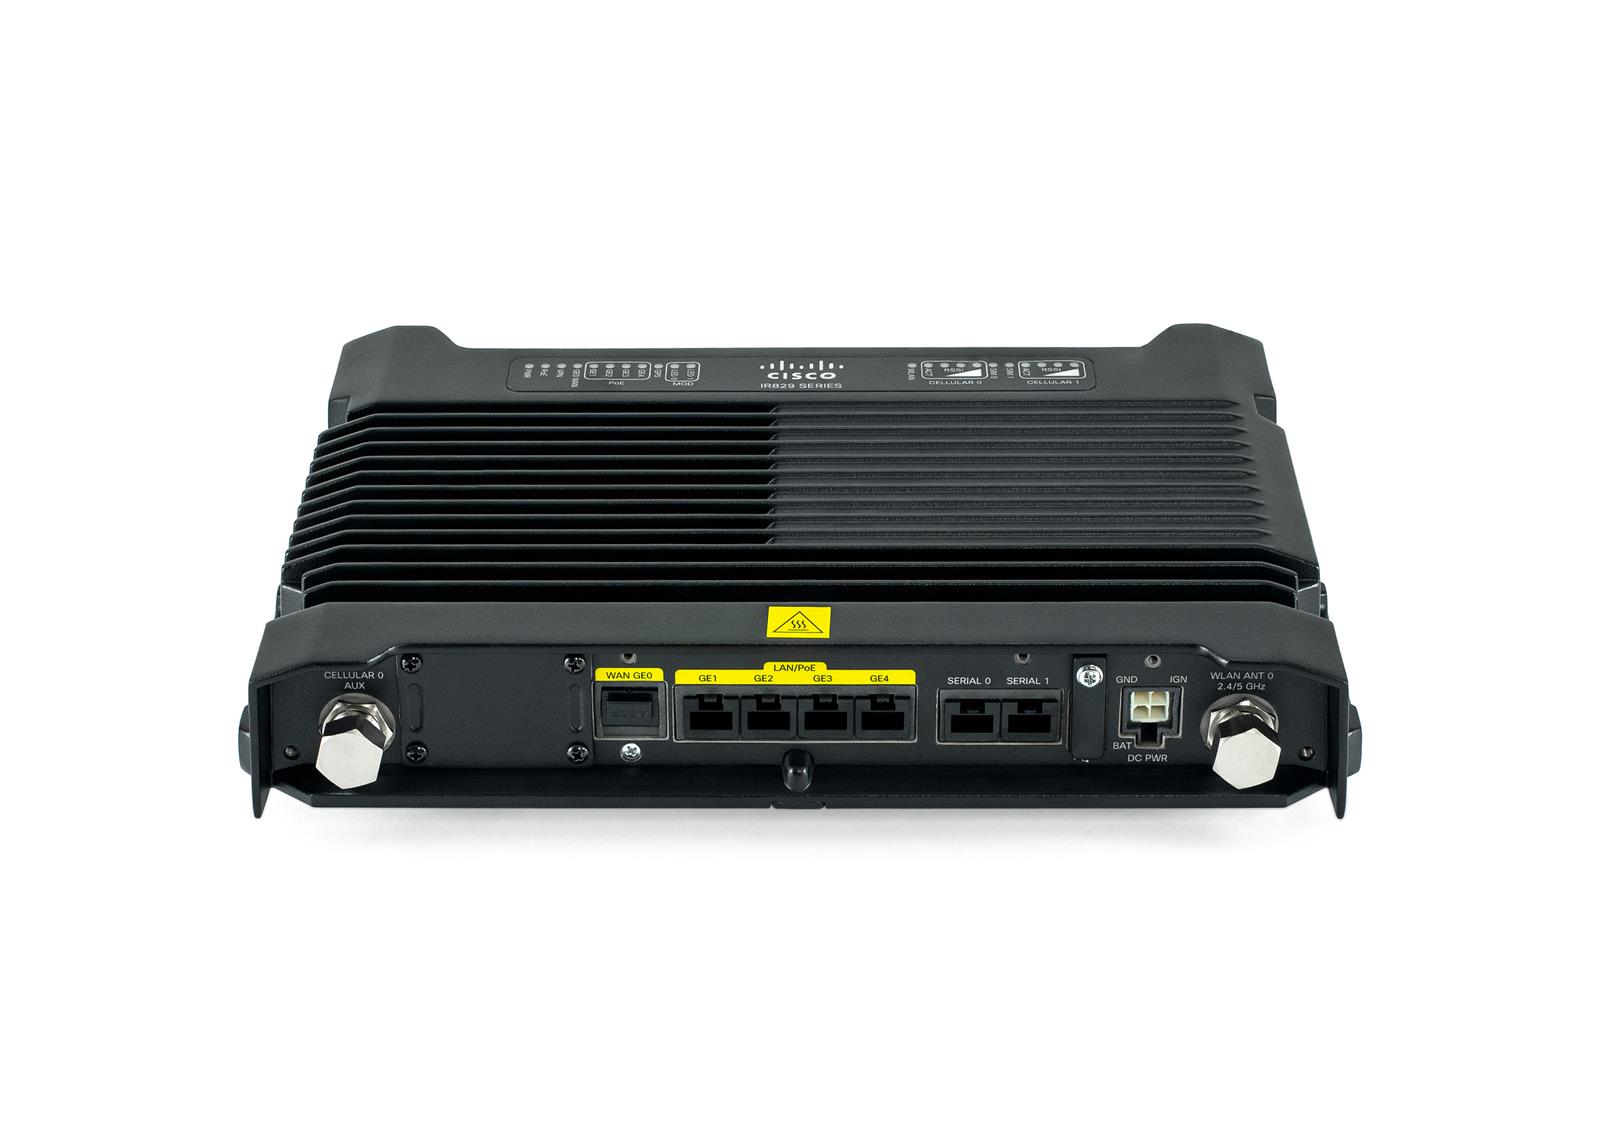 IR829-2LTE-EA-EK9 - 2x SIM 4G LTE, WiFi 2.4/5GHz, 4x 1GE RJ45, 1x 1G SFP, Licencja security, Cisco ISR IR829 Przemysłowy Router